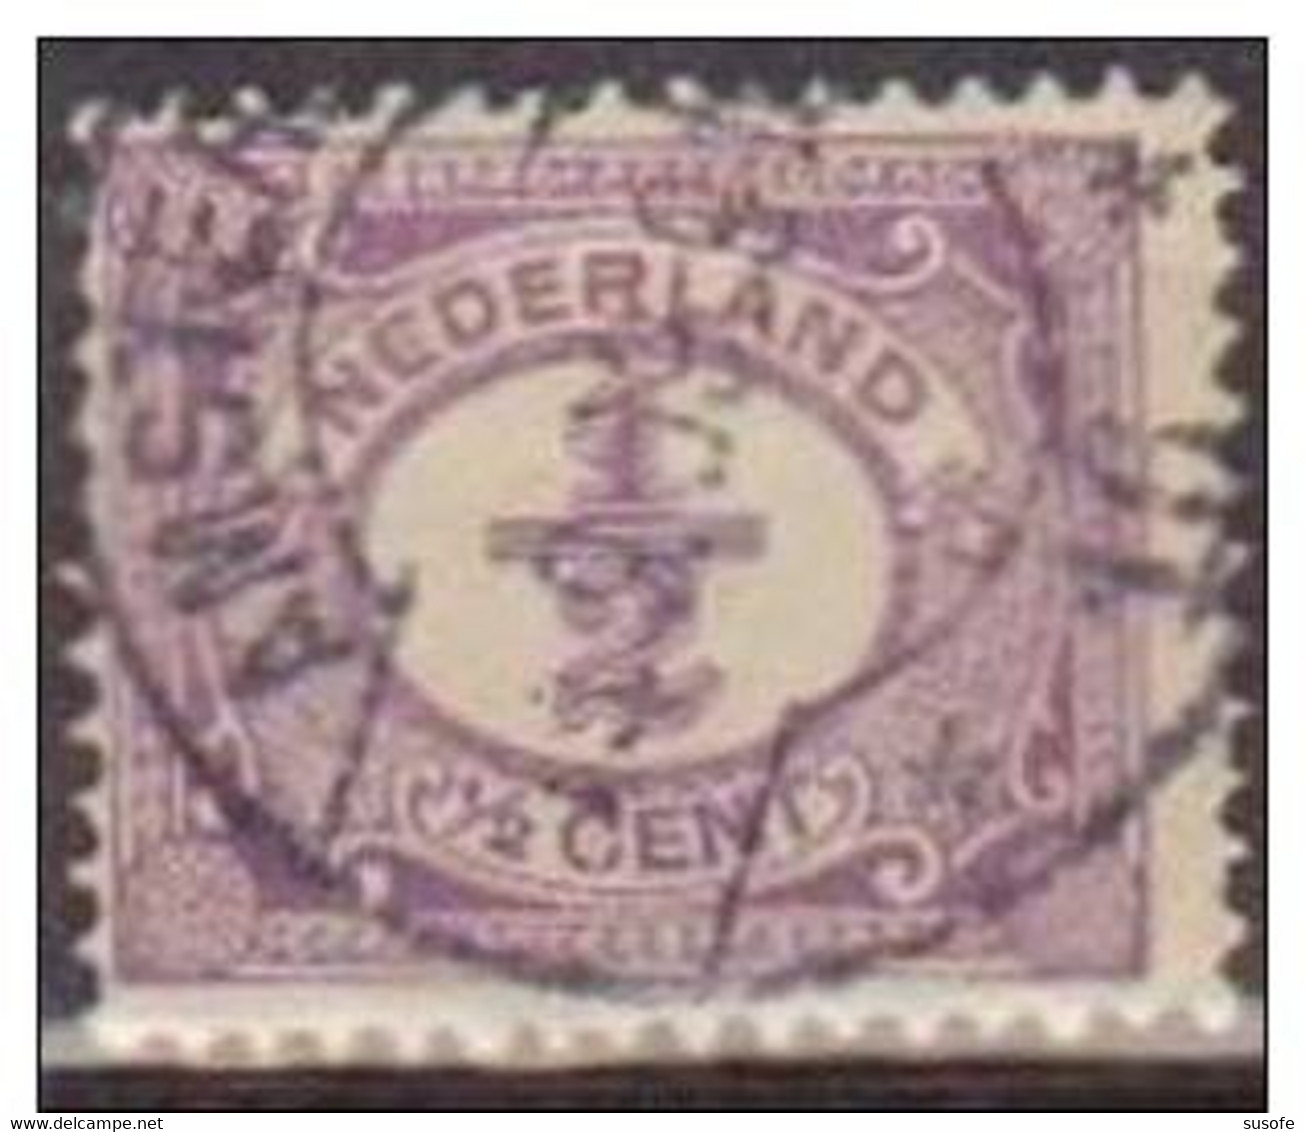 Holanda 1898-1924 Scott 55 Sello º Cifras Numeros Michel 49 Yvert 65 Nederland Paises Bajos Stamps Timbre Pays-Bas - Oblitérés